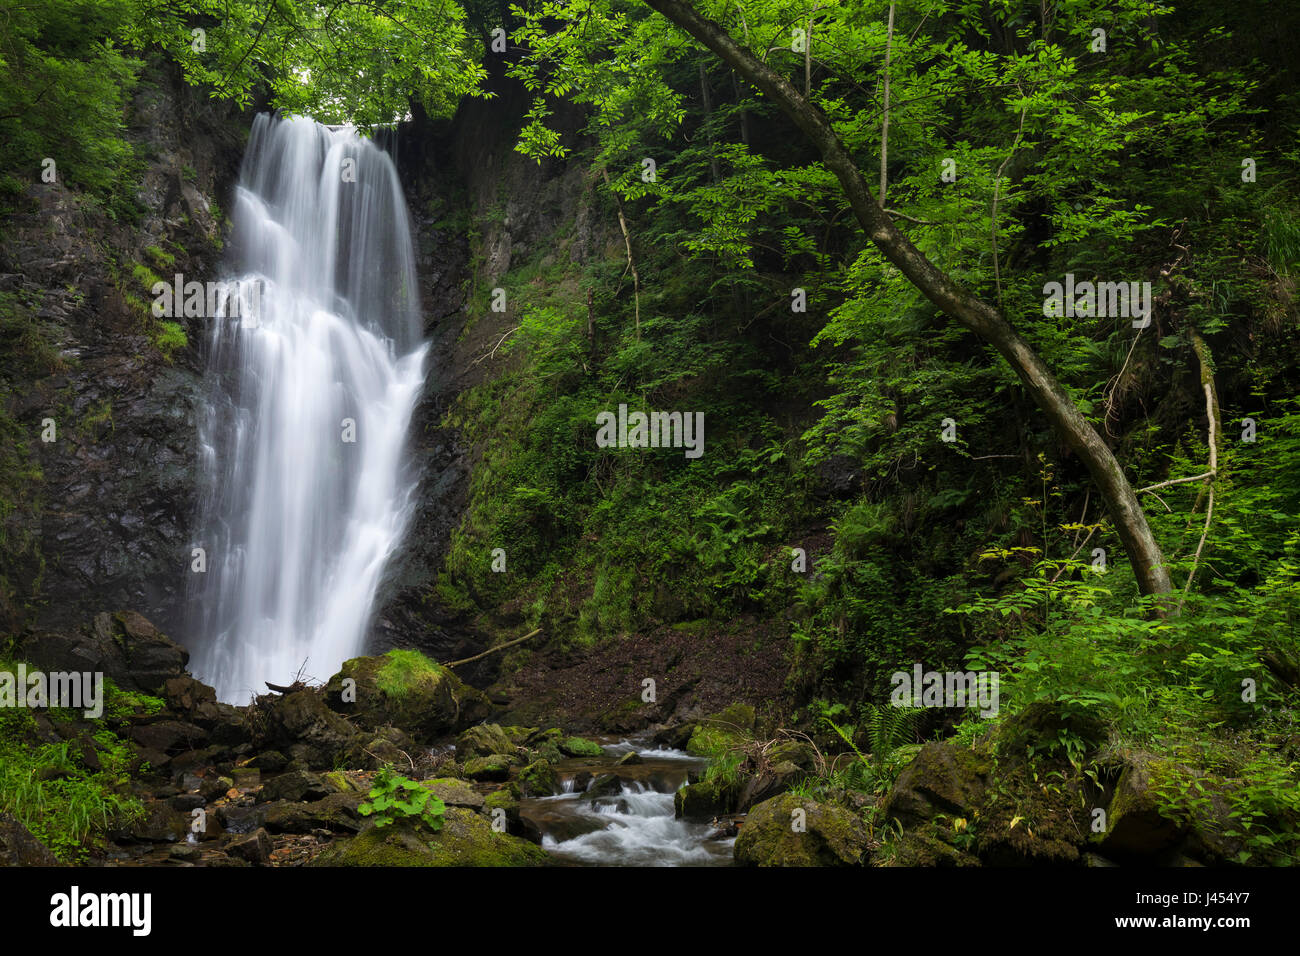 La cascada llamada Pesegh o Pesech, creado por el torrent en Brinzio Valmolina, Valganna, Parco del Campo dei Fiori, distrito de Varese, Lombardía, Foto de stock